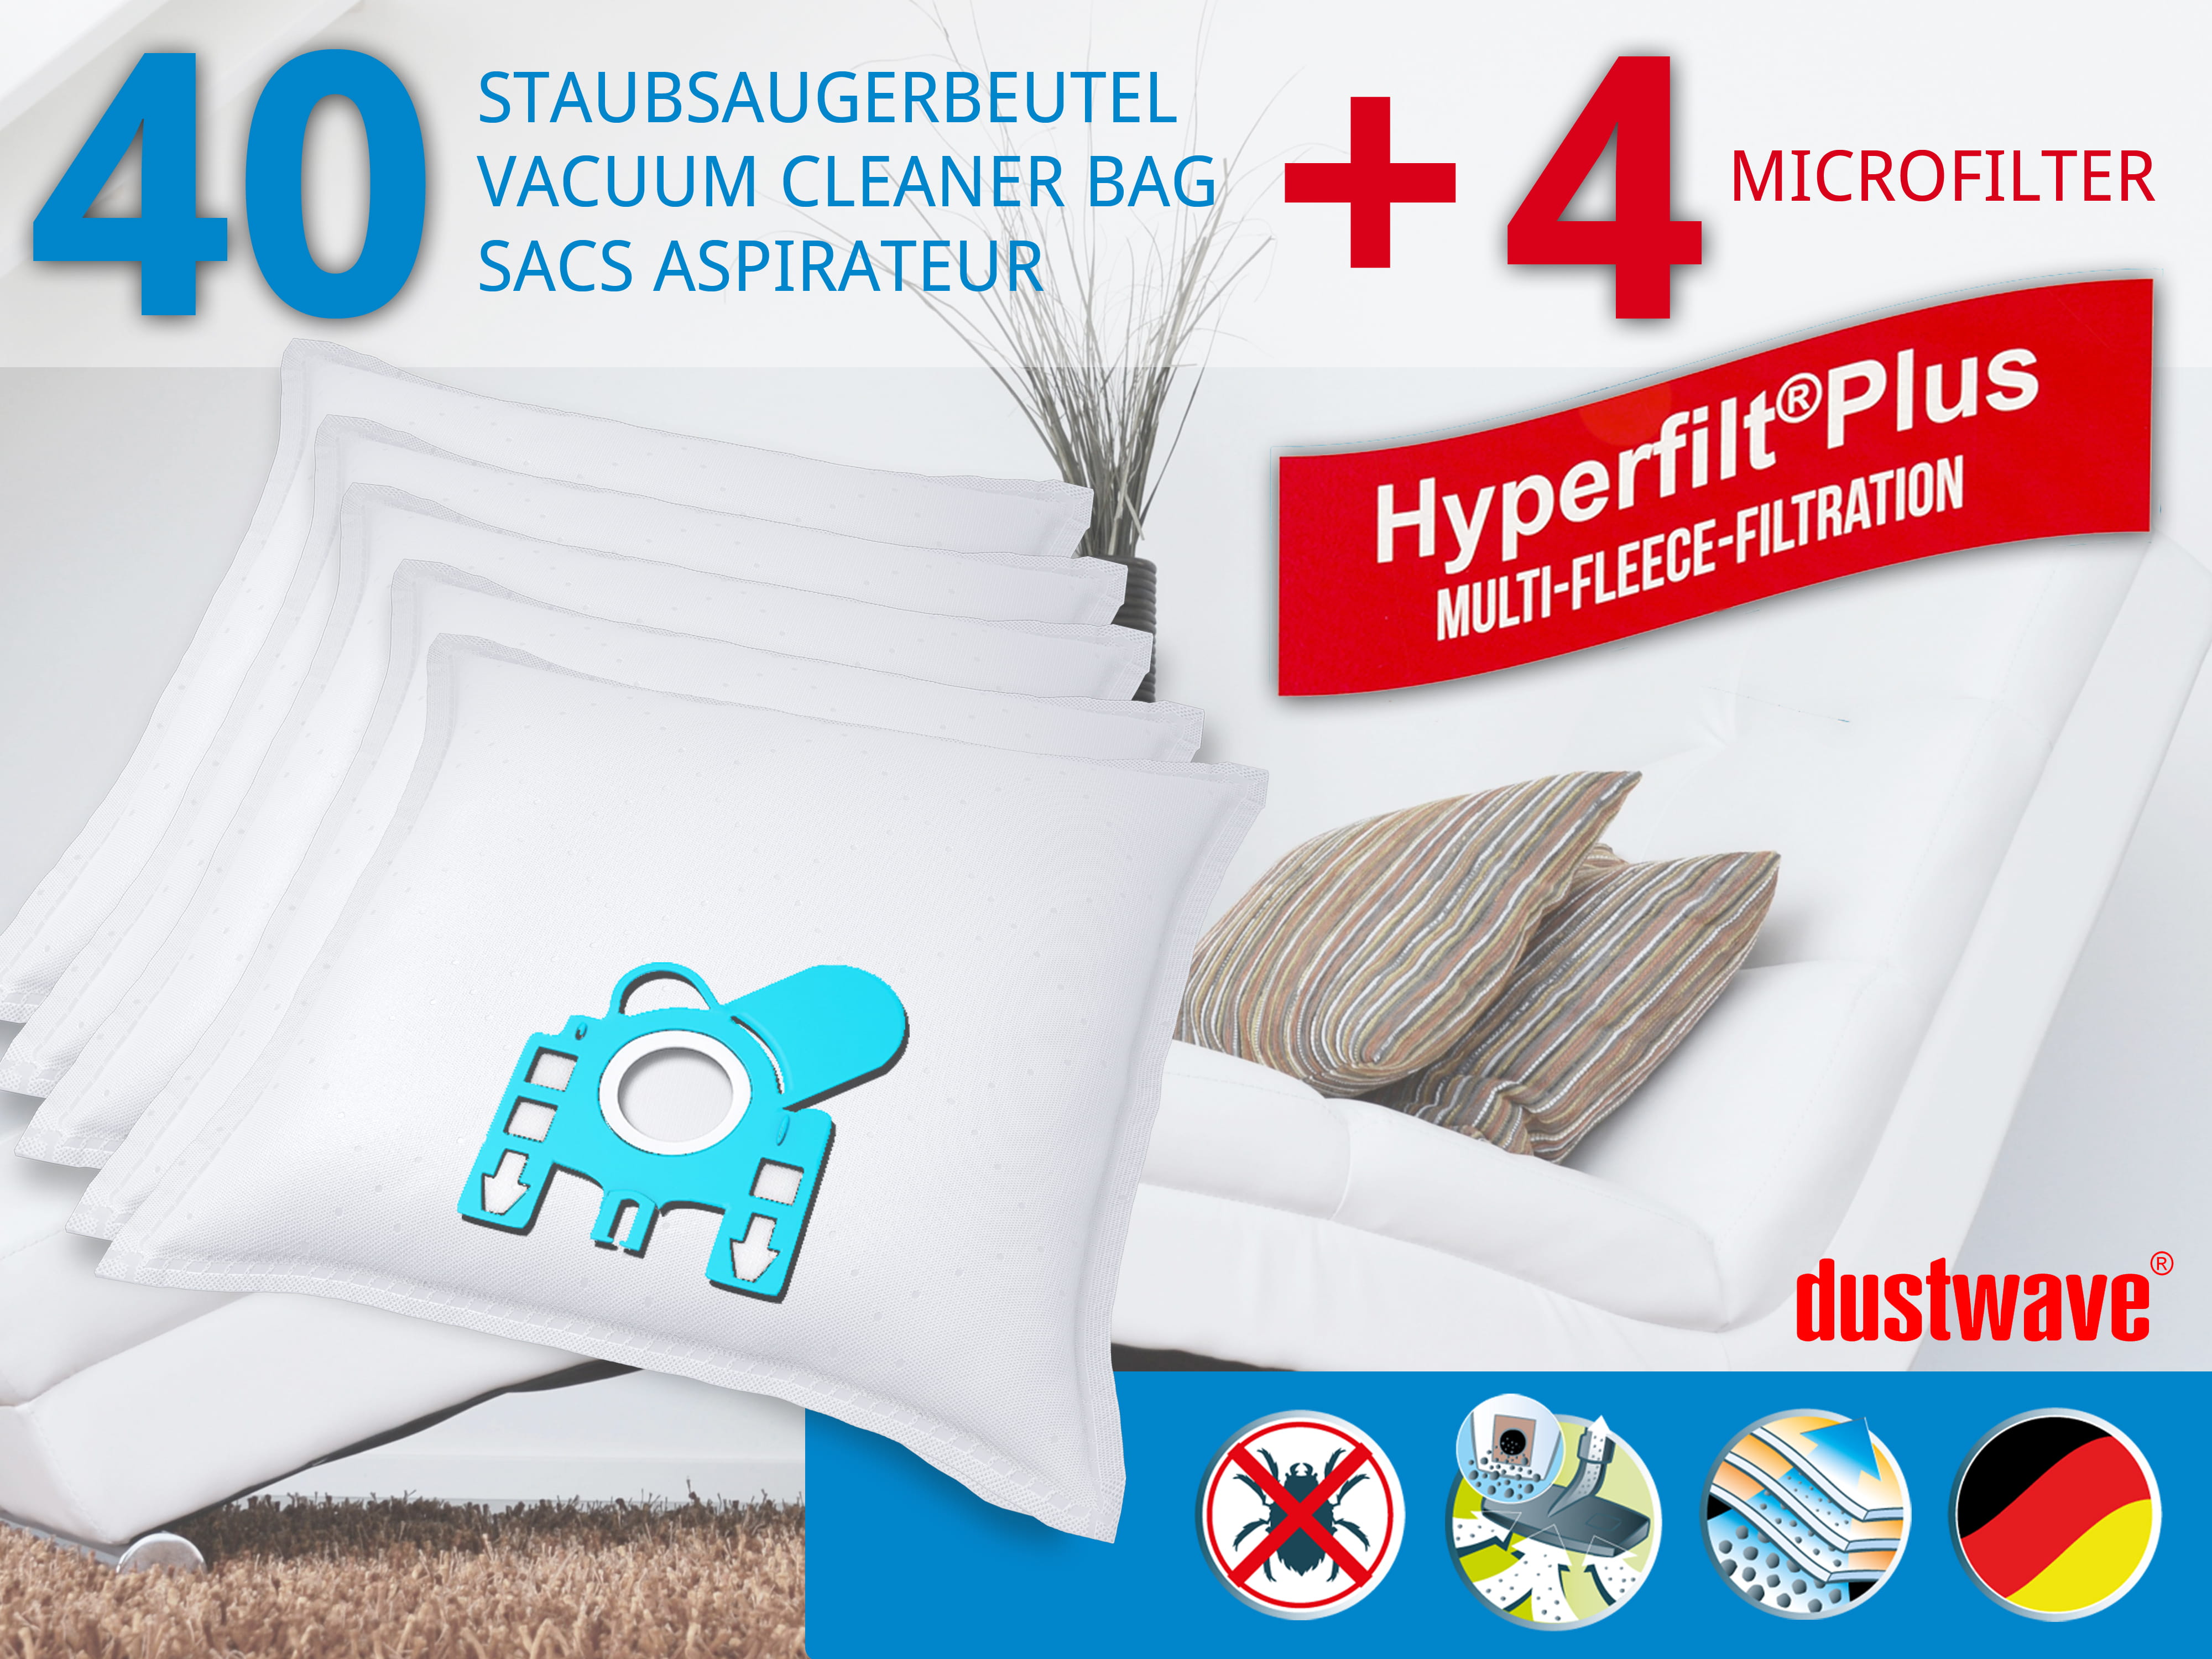 Dustwave® 40 Staubsaugerbeutel für Hoover H 72 / H72 - hocheffizient, mehrlagiges Mikrovlies mit Hygieneverschluss - Made in Germany